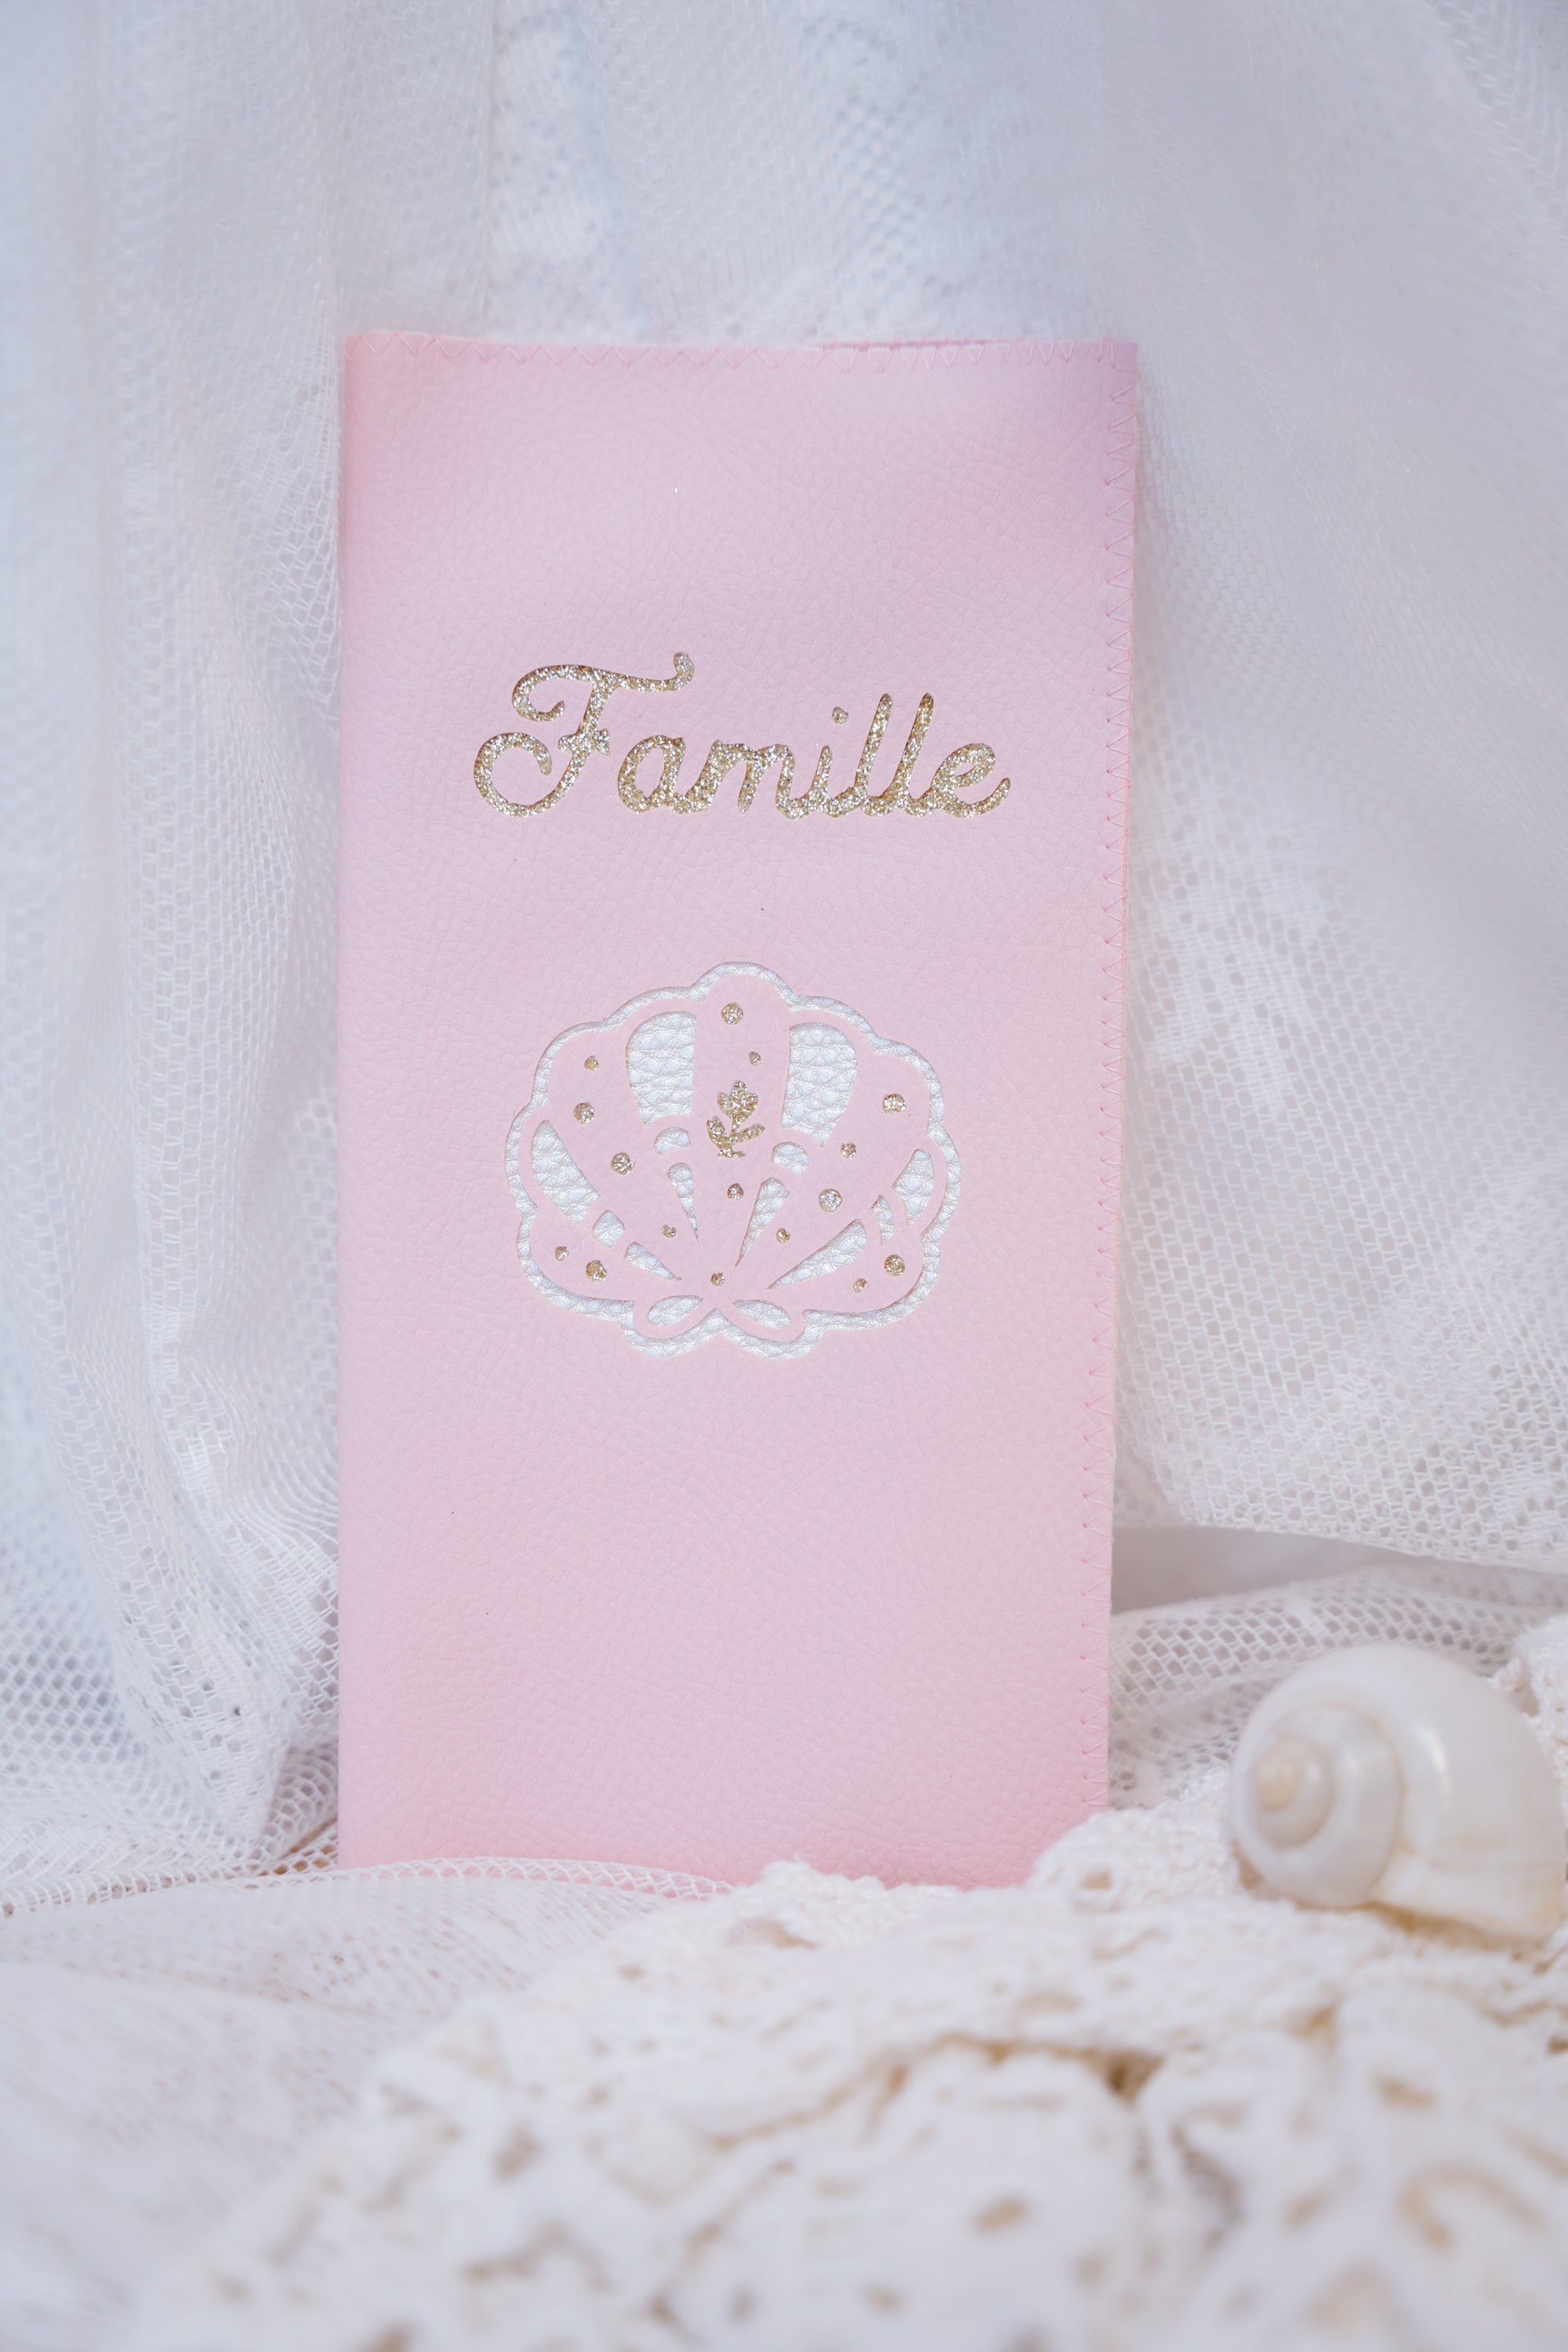 Protège livret de famille collection coquillage rose personnalisé